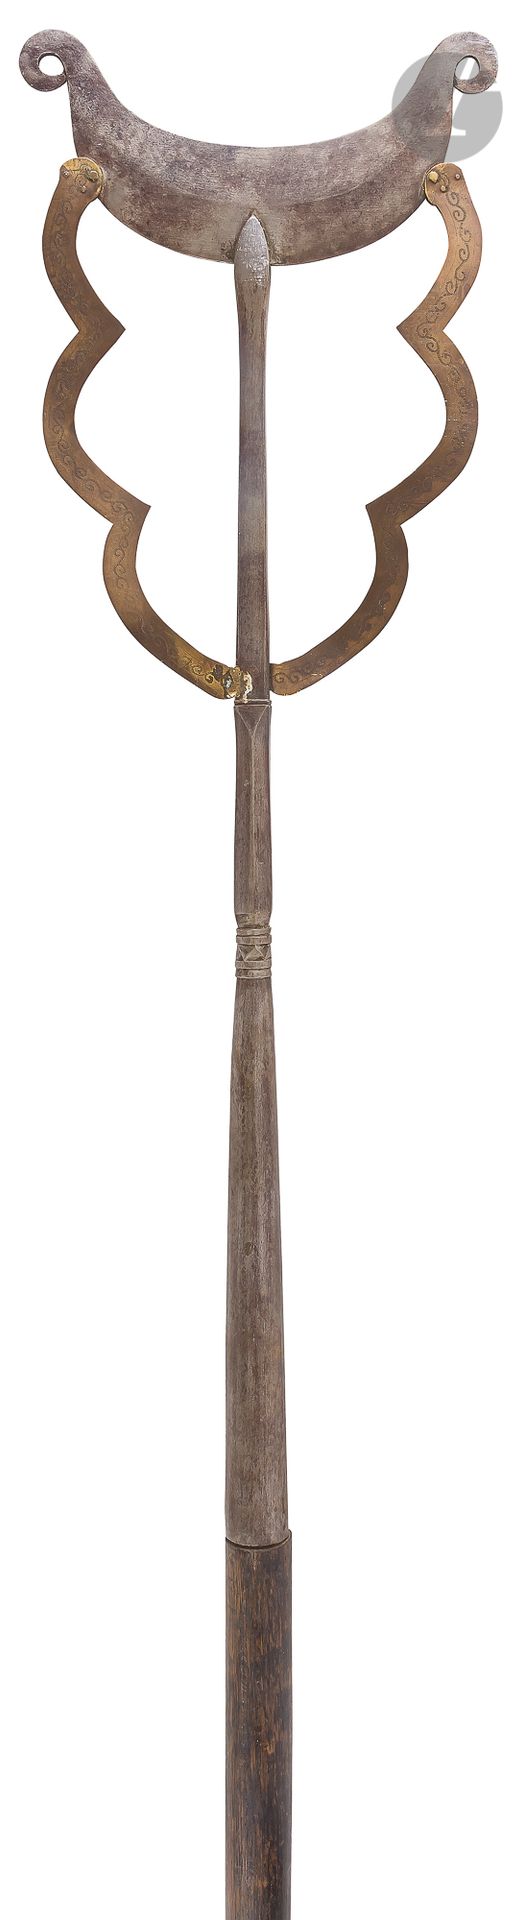 Null 中国的哈斯特武器。

在两端弯曲的月牙形的铁。安装在一个侧面为圆形的插座上，两边有一条切割好的黄铜带，上面刻有字。发黑的木轴。

B.E. 19世纪。